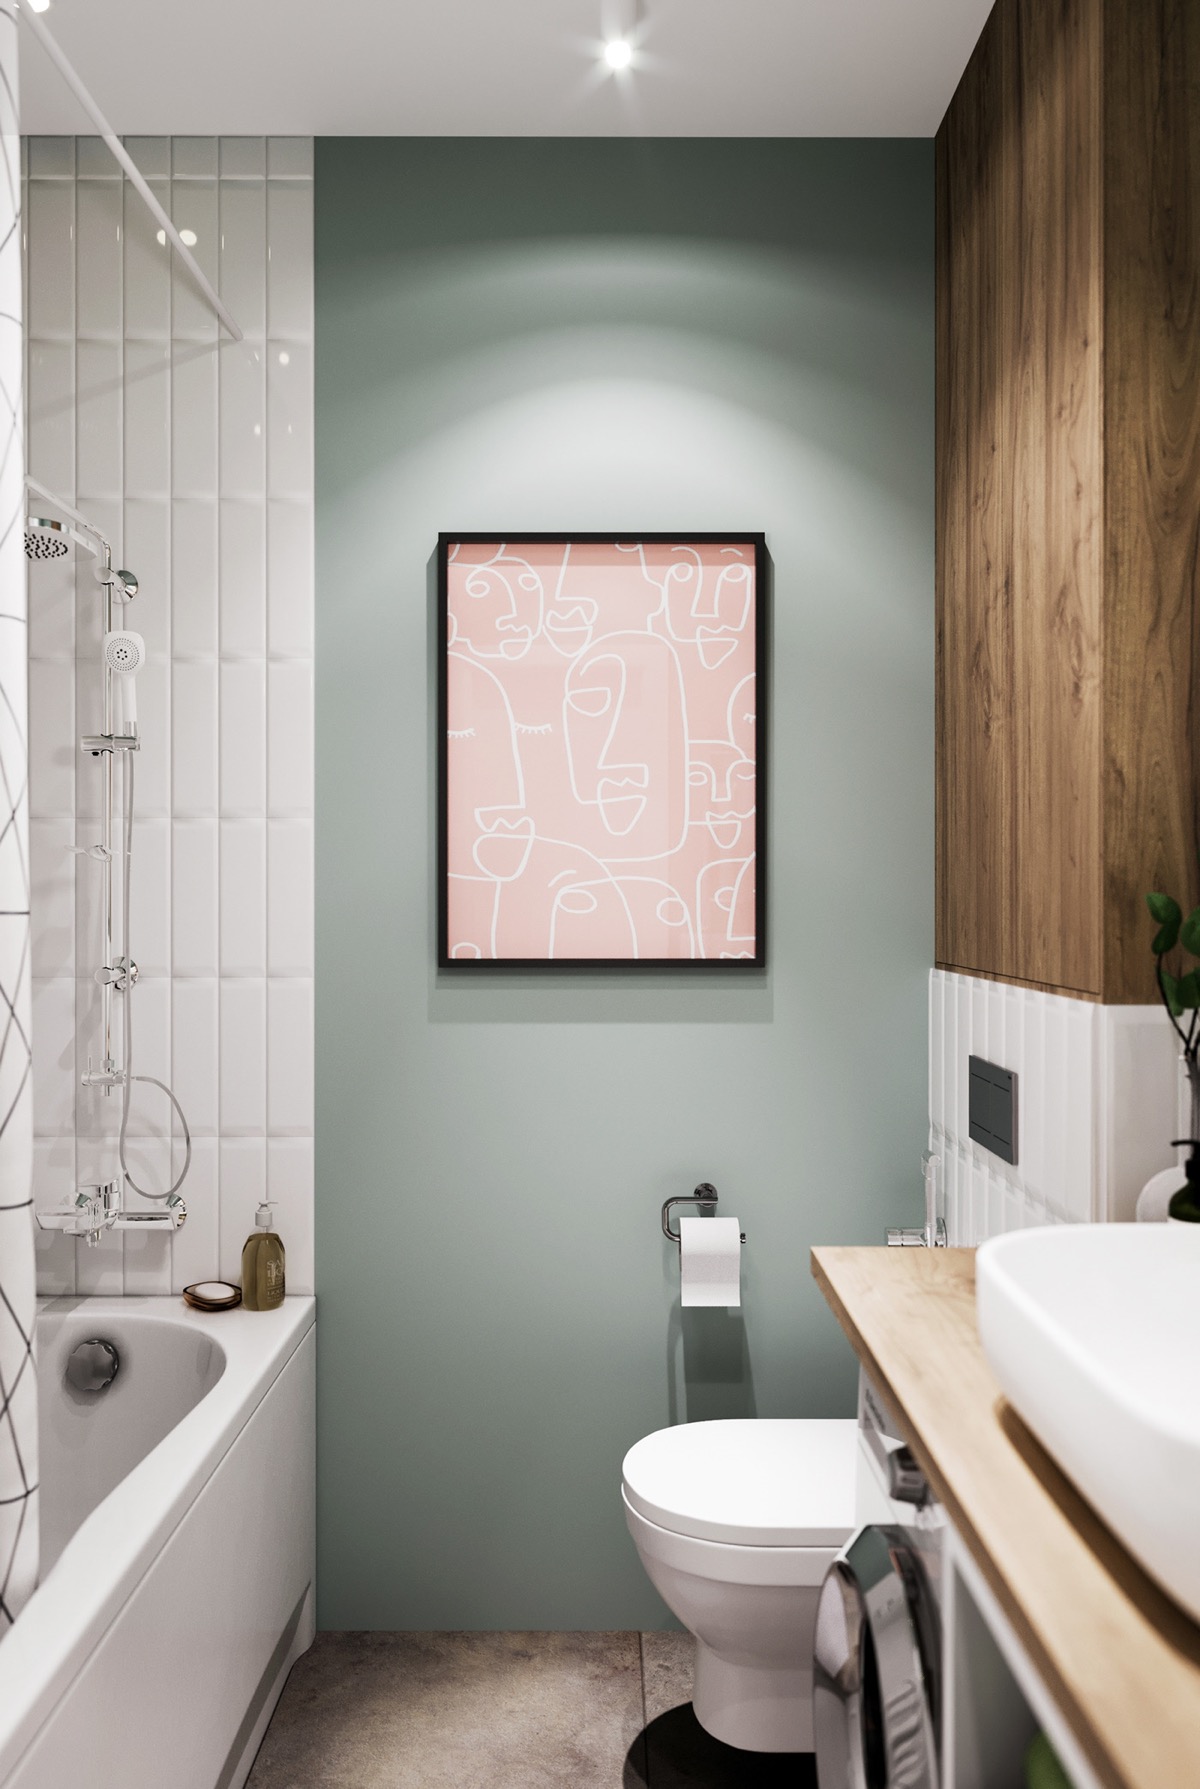 Bức tường màu xanh lá cây nhẹ nhàng trong phòng tắm căn hộ tạo cảm giác thư giãn, thoải mái cho người dùng.